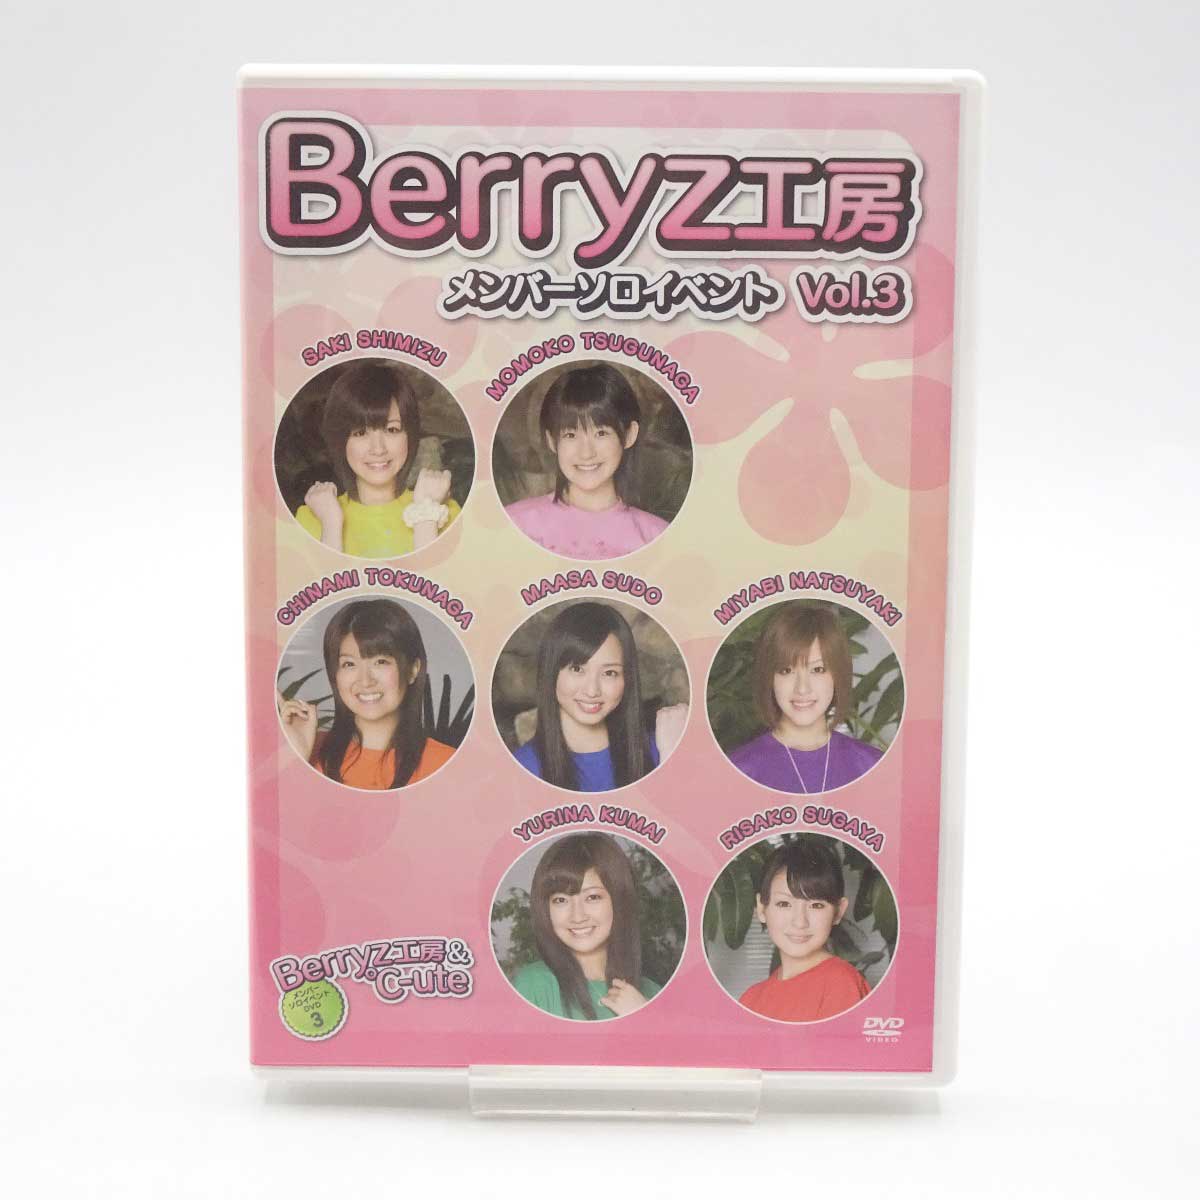 【中古】Berryz工房&℃-ute ベリーズ工房メンバーソロイベントvol.3 TGBS-4788